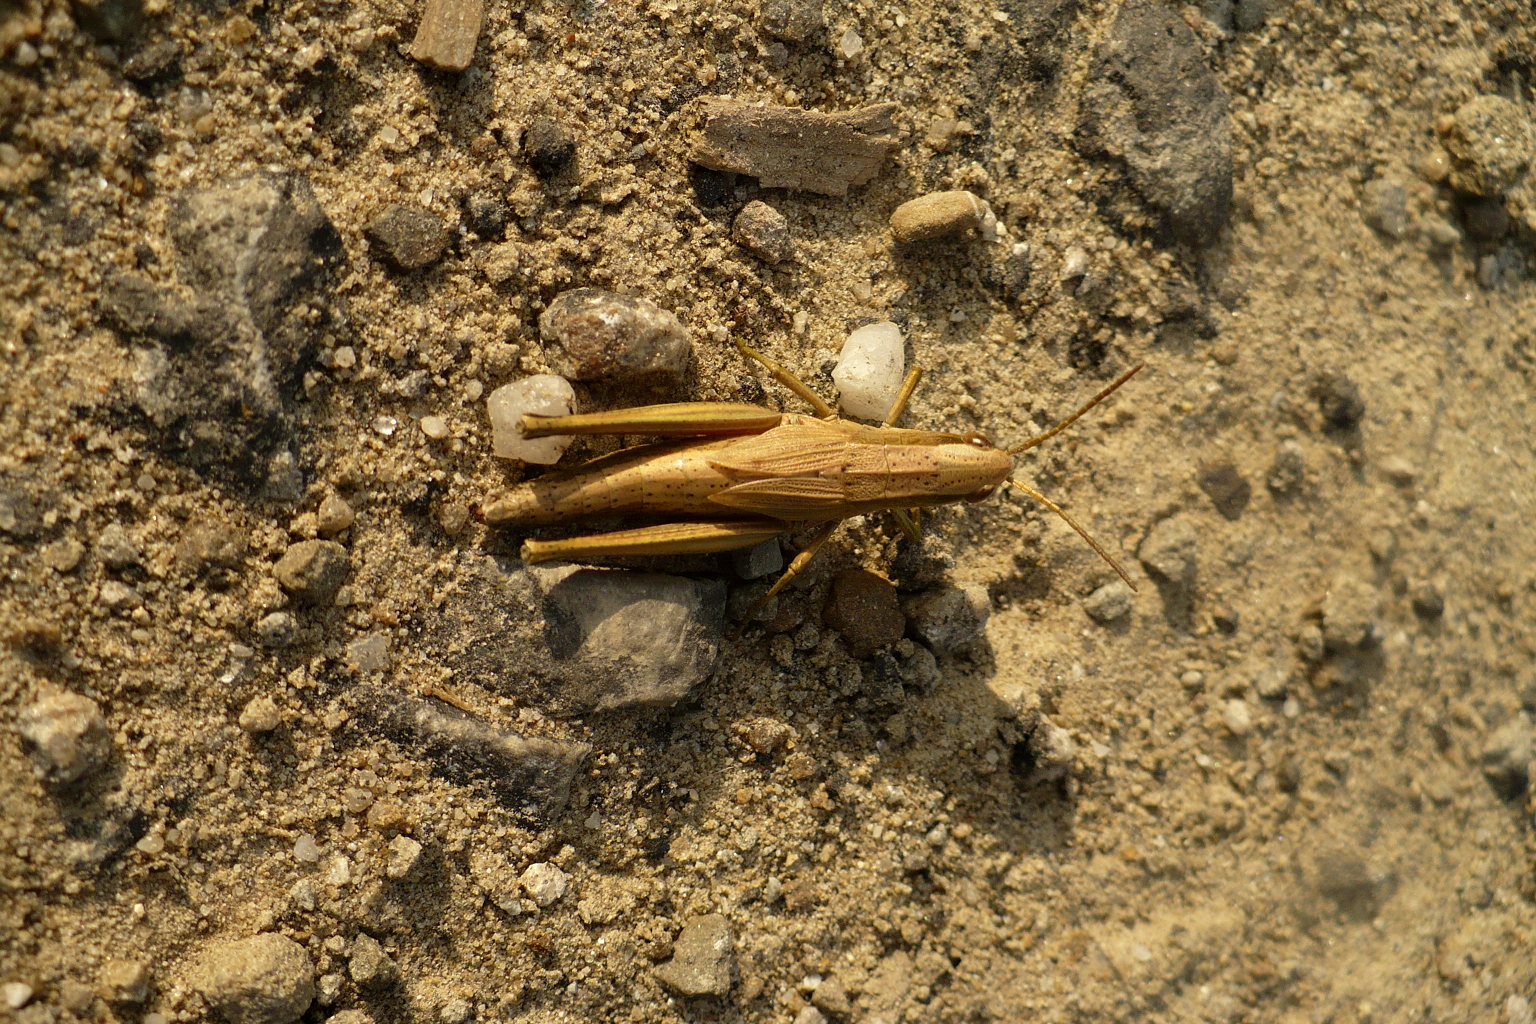 Grasshopper photo 03